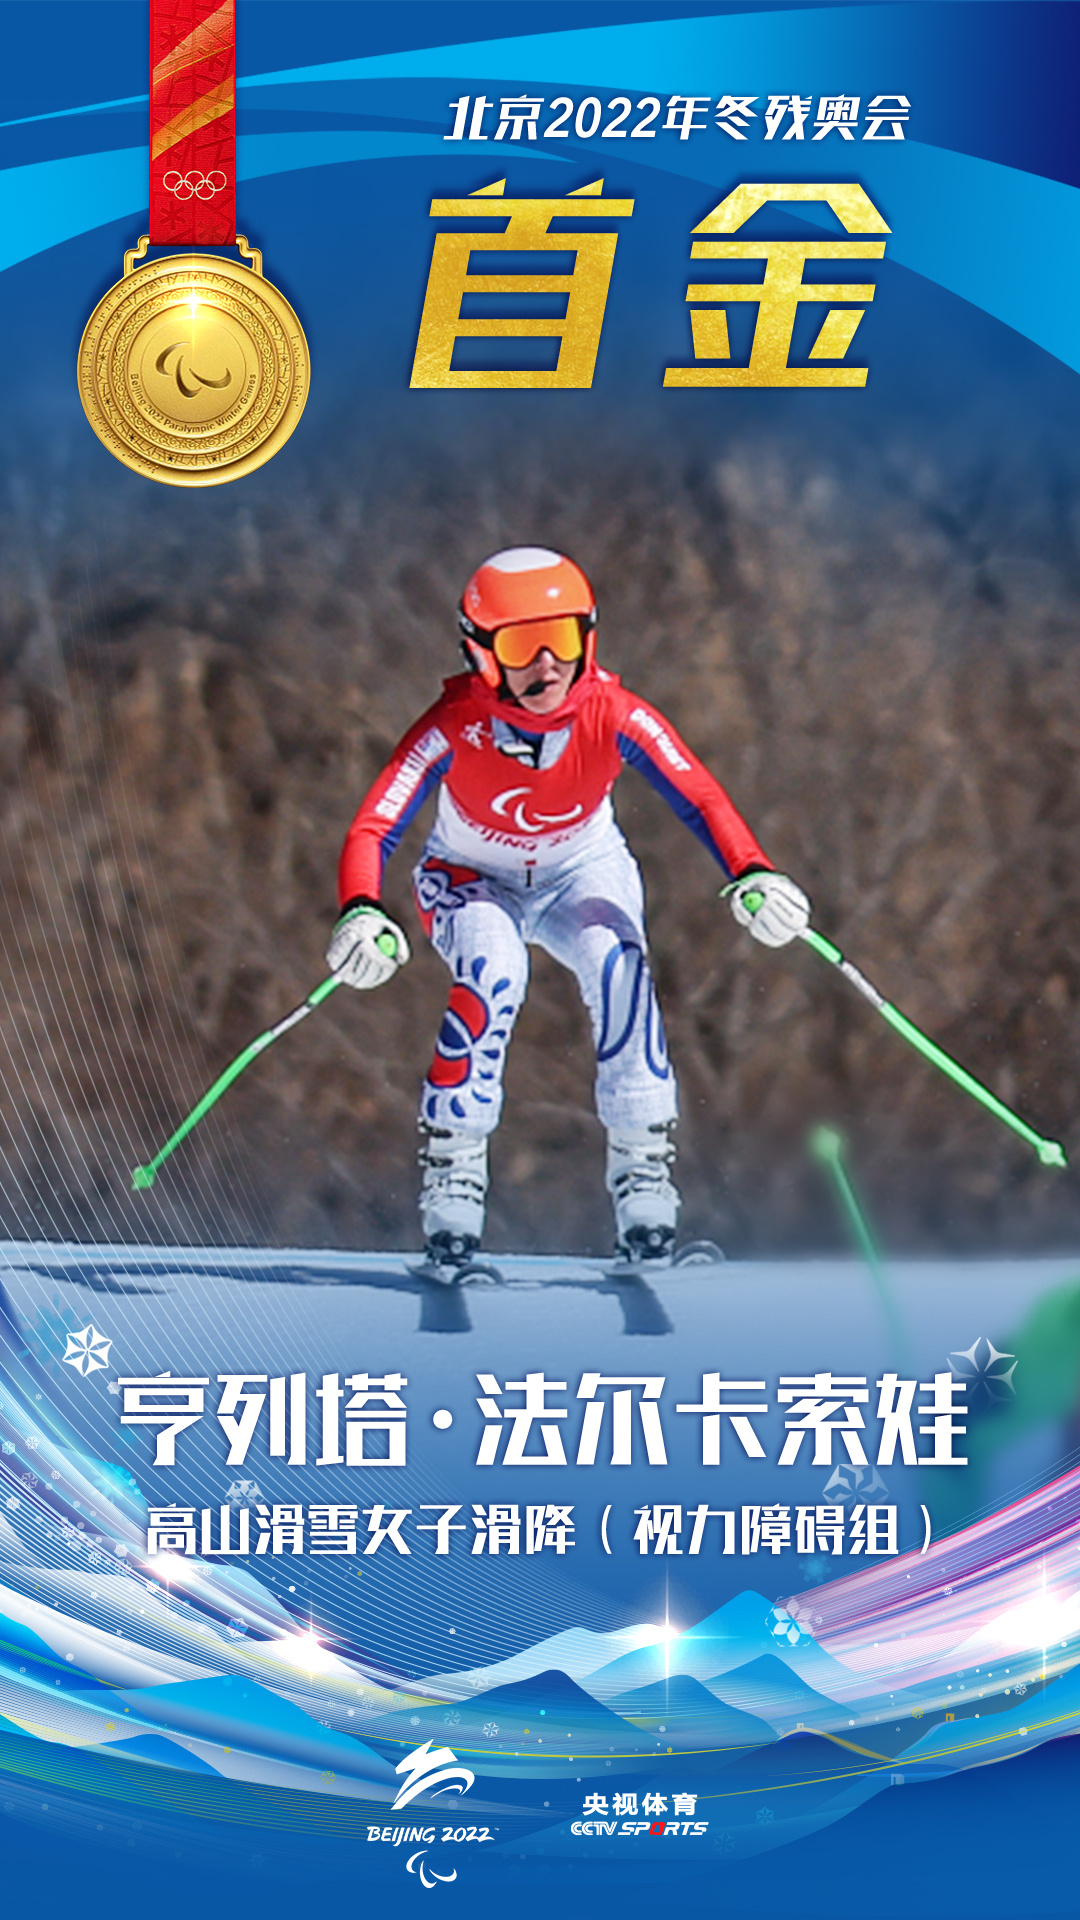 北京冬残奥会首金！斯洛伐克选手夺得高山滑雪女子滑降金牌